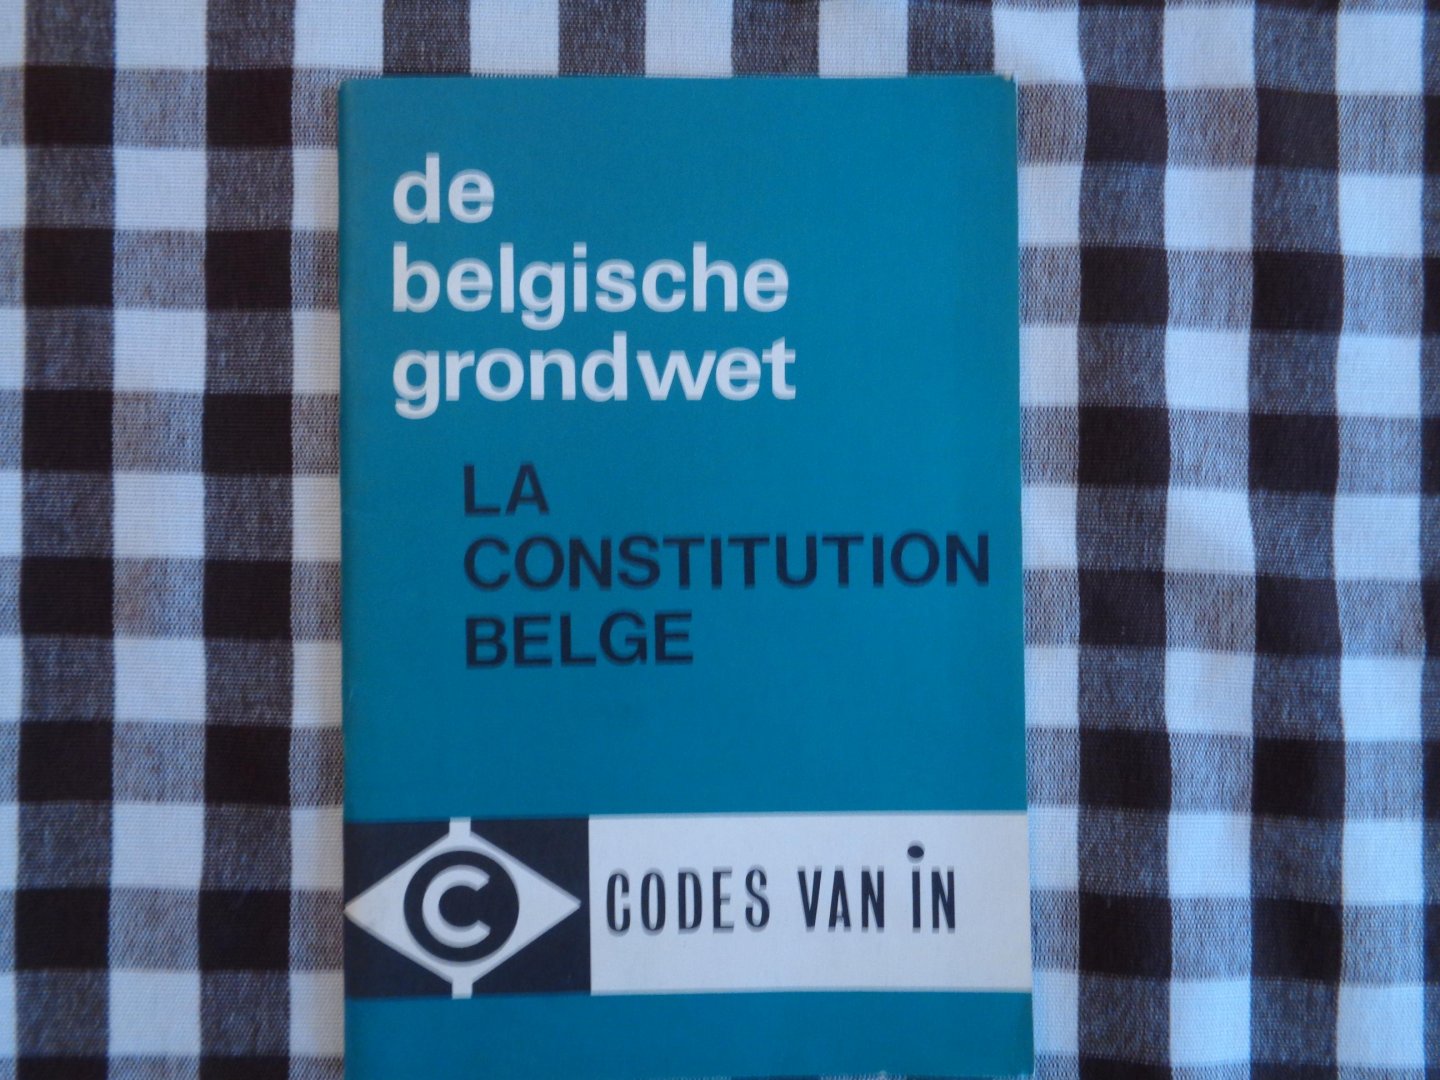 luk van gelder - de belgische grondwet